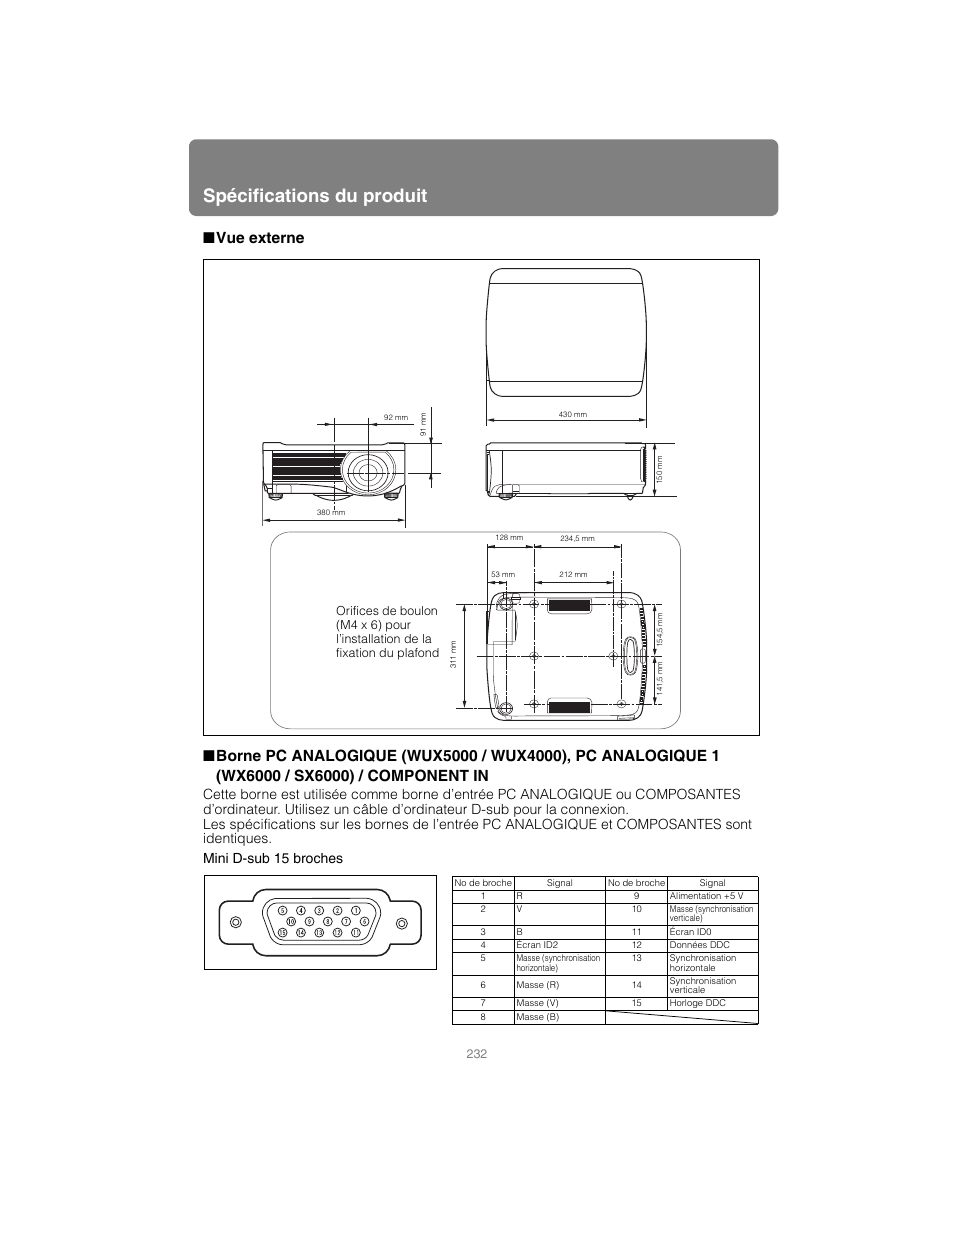 Vue externe, Spécifications du produit | Canon XEED WUX4000 Manuel d'utilisation | Page 232 / 248